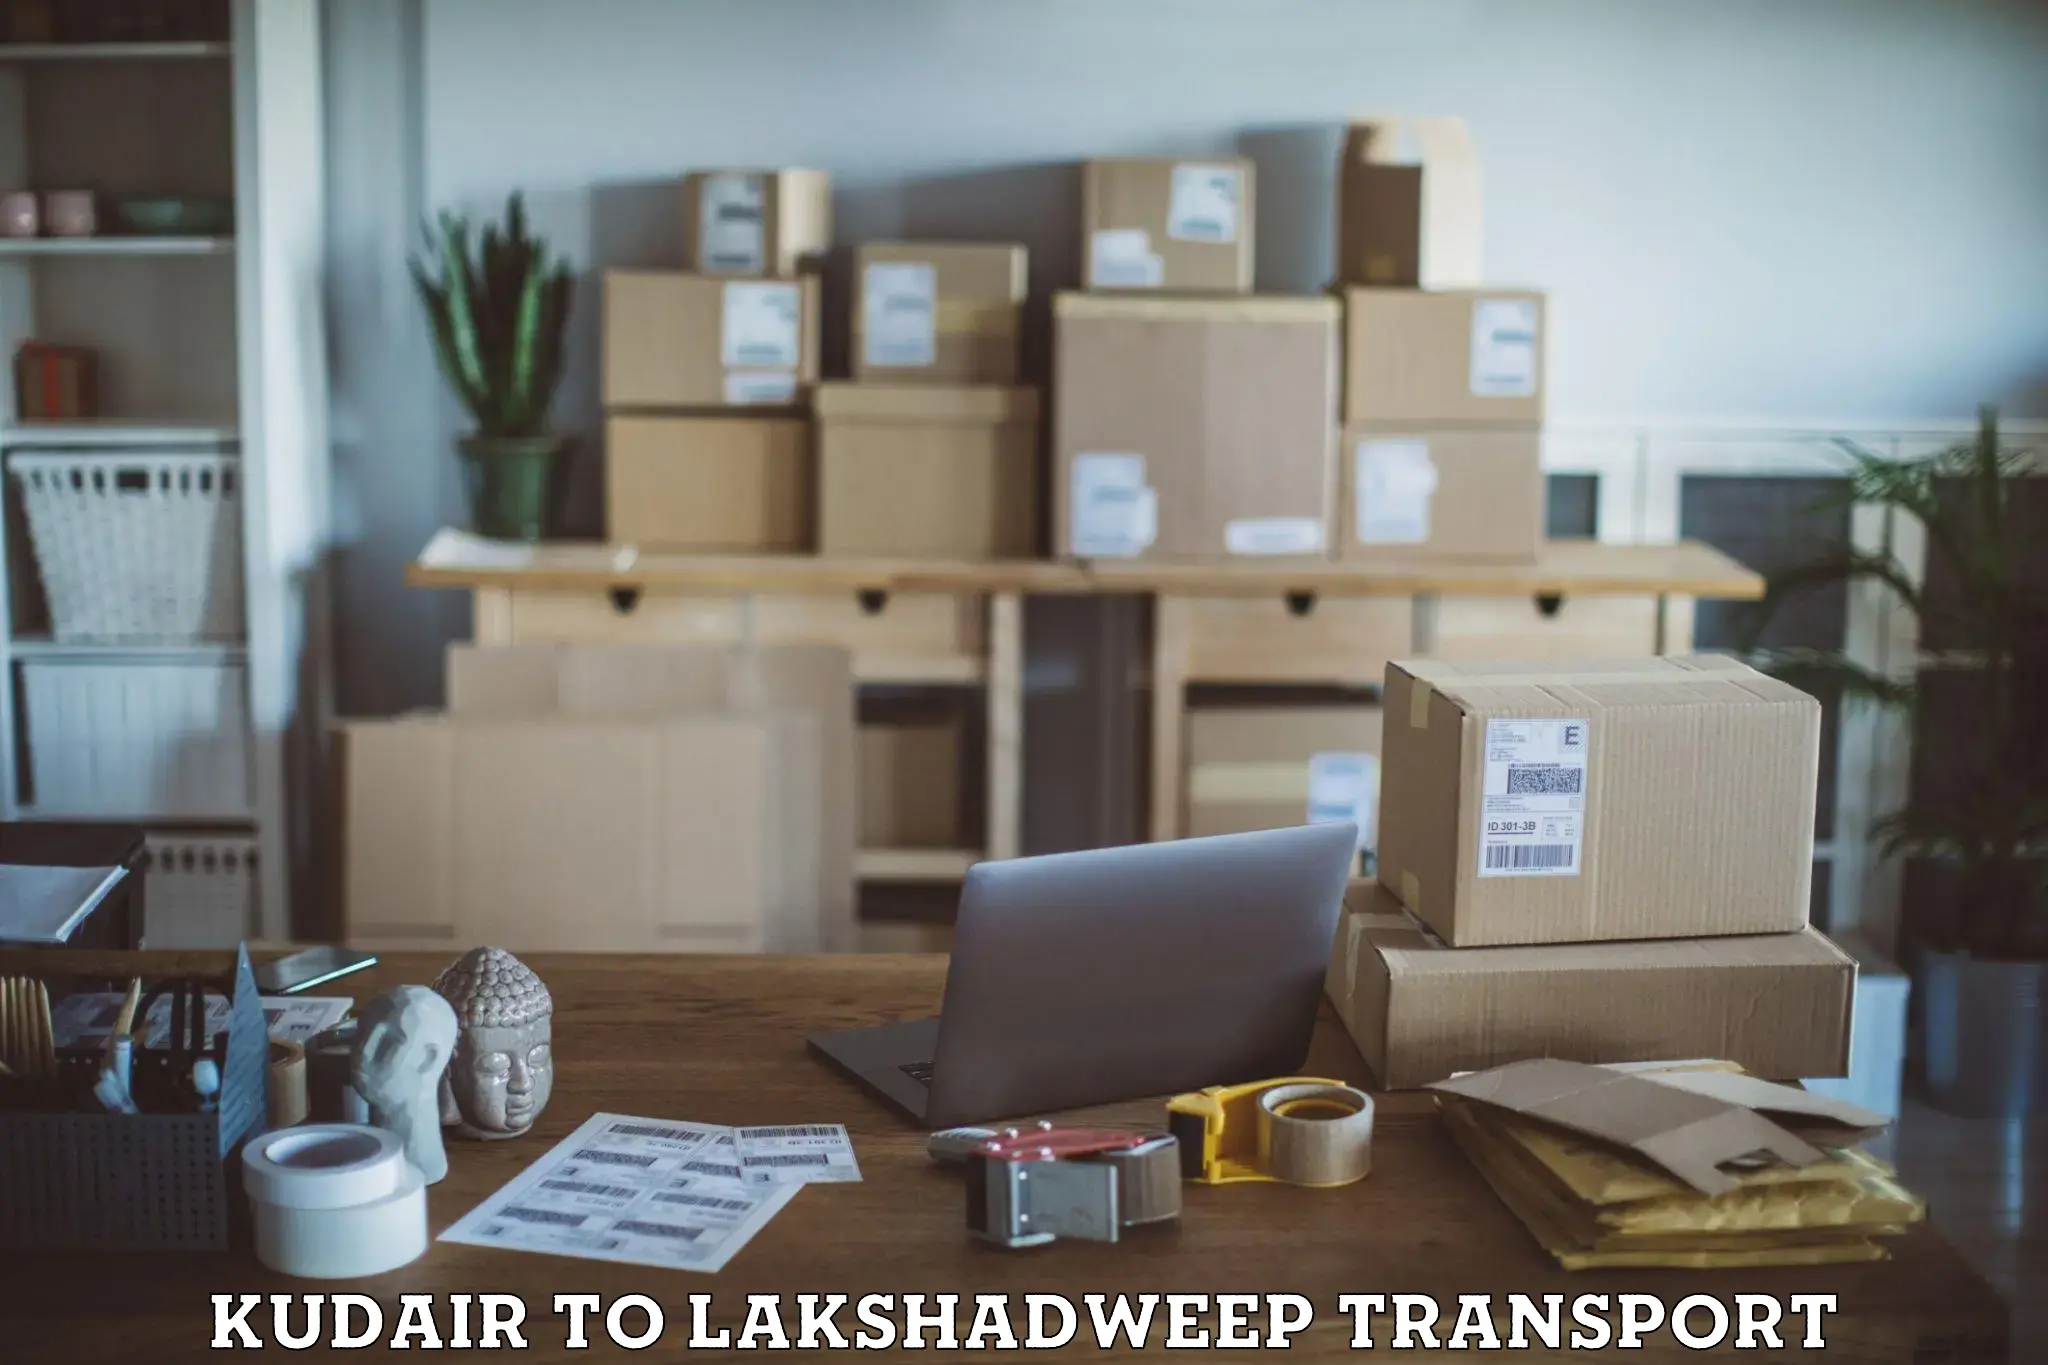 International cargo transportation services Kudair to Lakshadweep